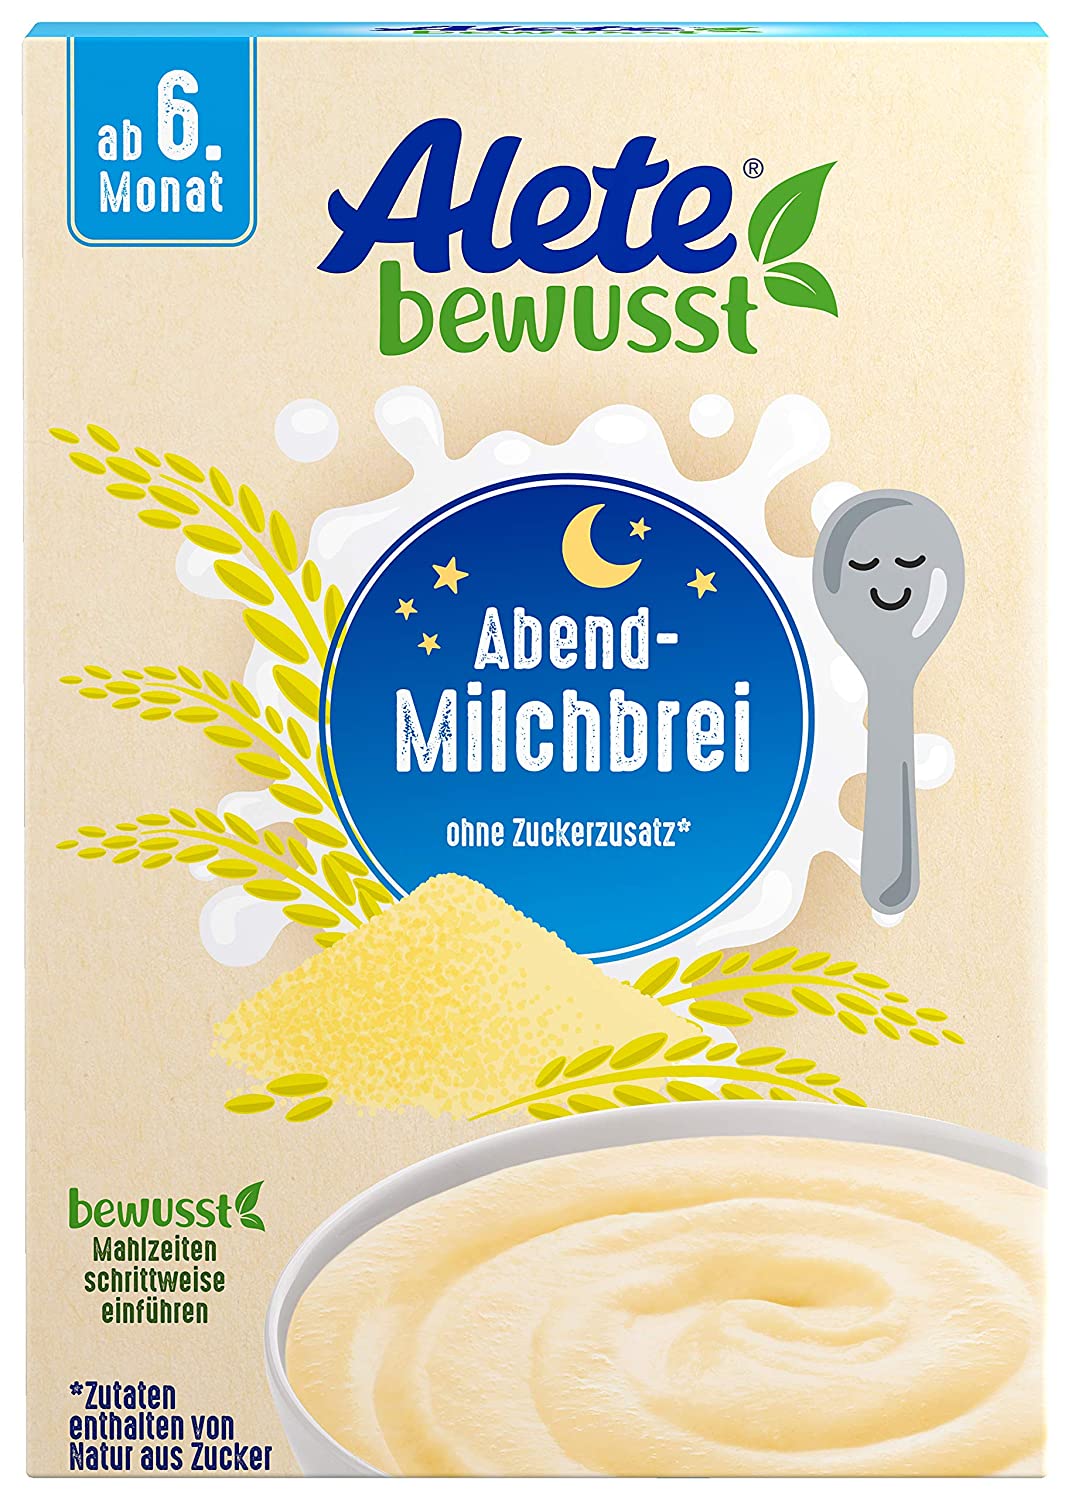 Alete bewusst Abend-Milchbrei, neutraler Geschmack, ab dem 6. Monat, Babynahrung mit Magermilchpulver & pflanzlichen Ölen, Milch-Getreidebrei für morgens & abends, 400 g